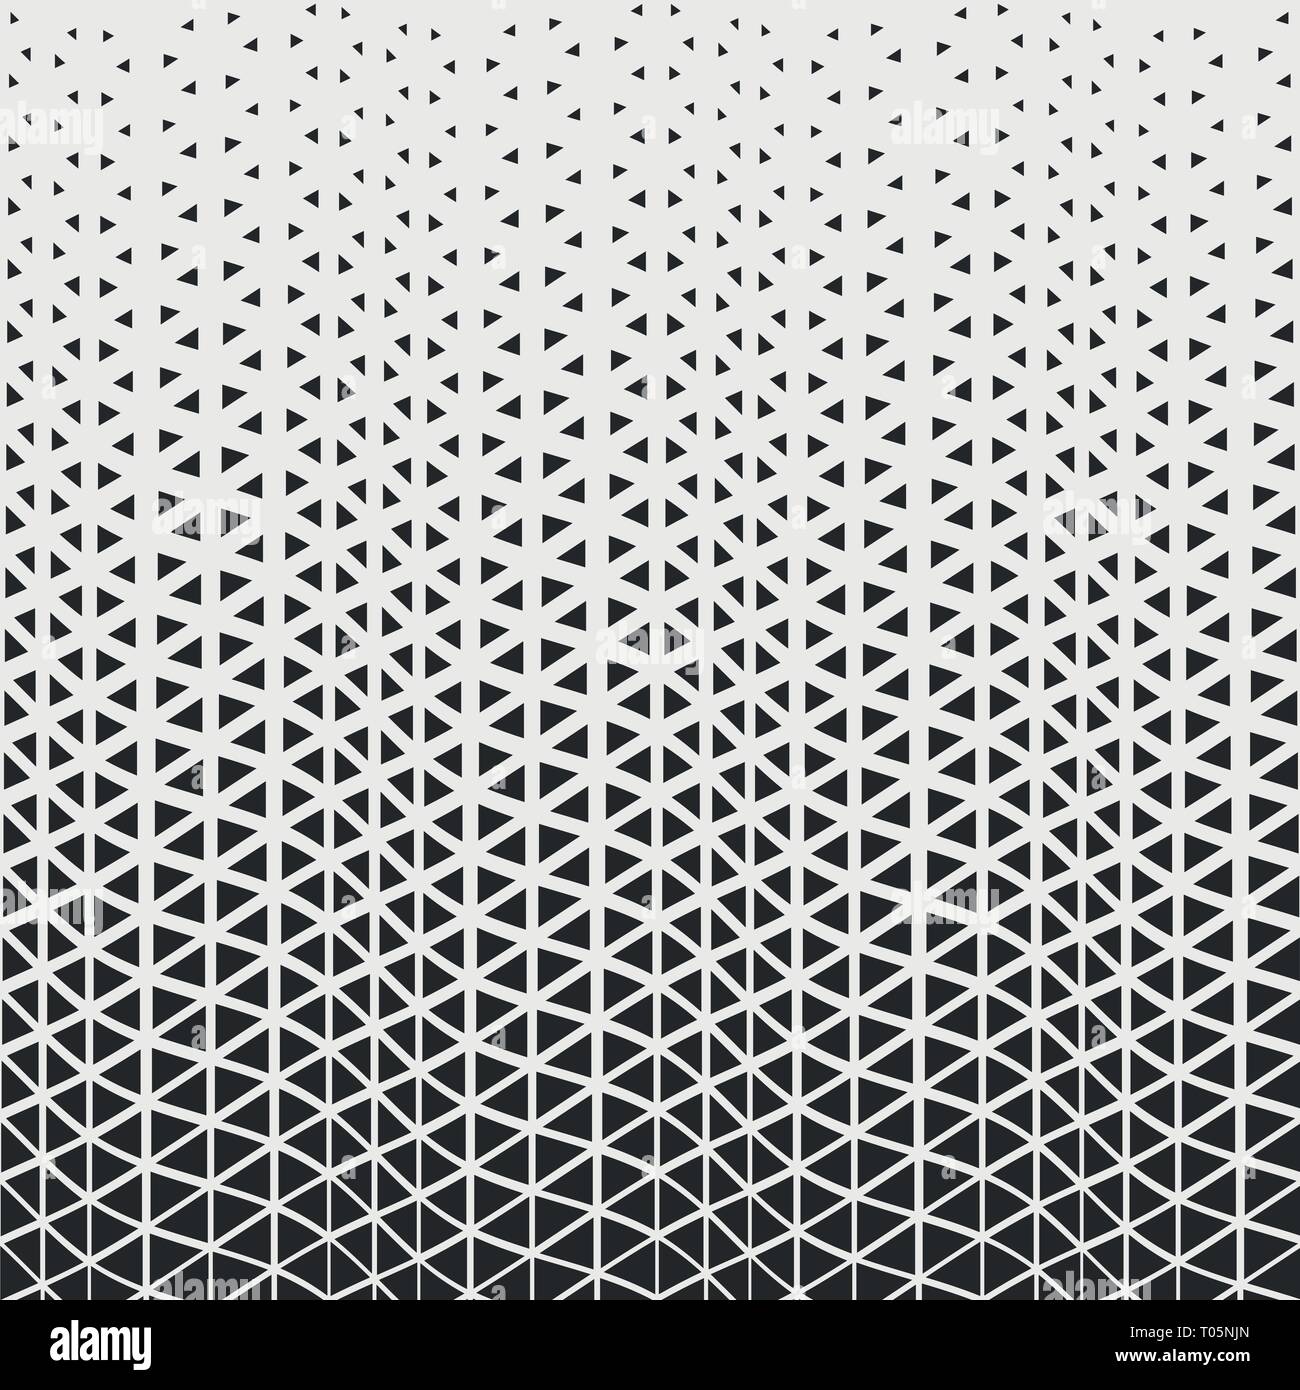 Abstrakte moderne Dreieck Muster von Schwarz hipster design Dekoration Hintergrund. Sie Poster, Cover Design, Artwork verwenden können. Abbildung: Vector ep Stock Vektor